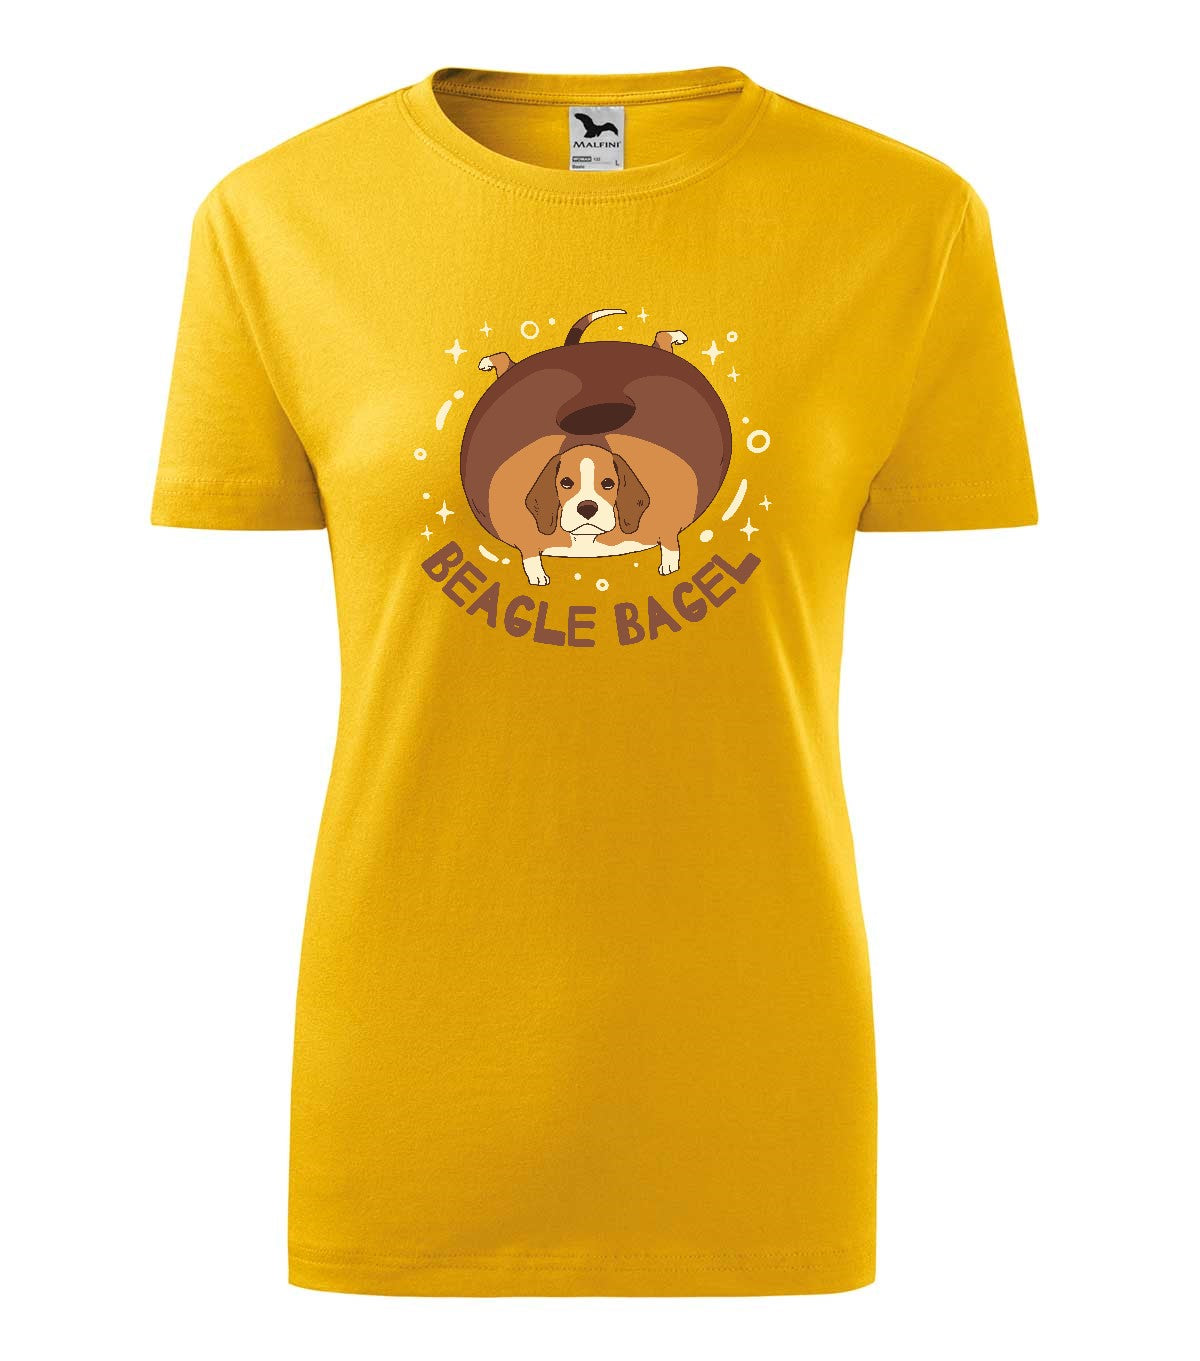 Beagle Bagel gyerek technikai póló